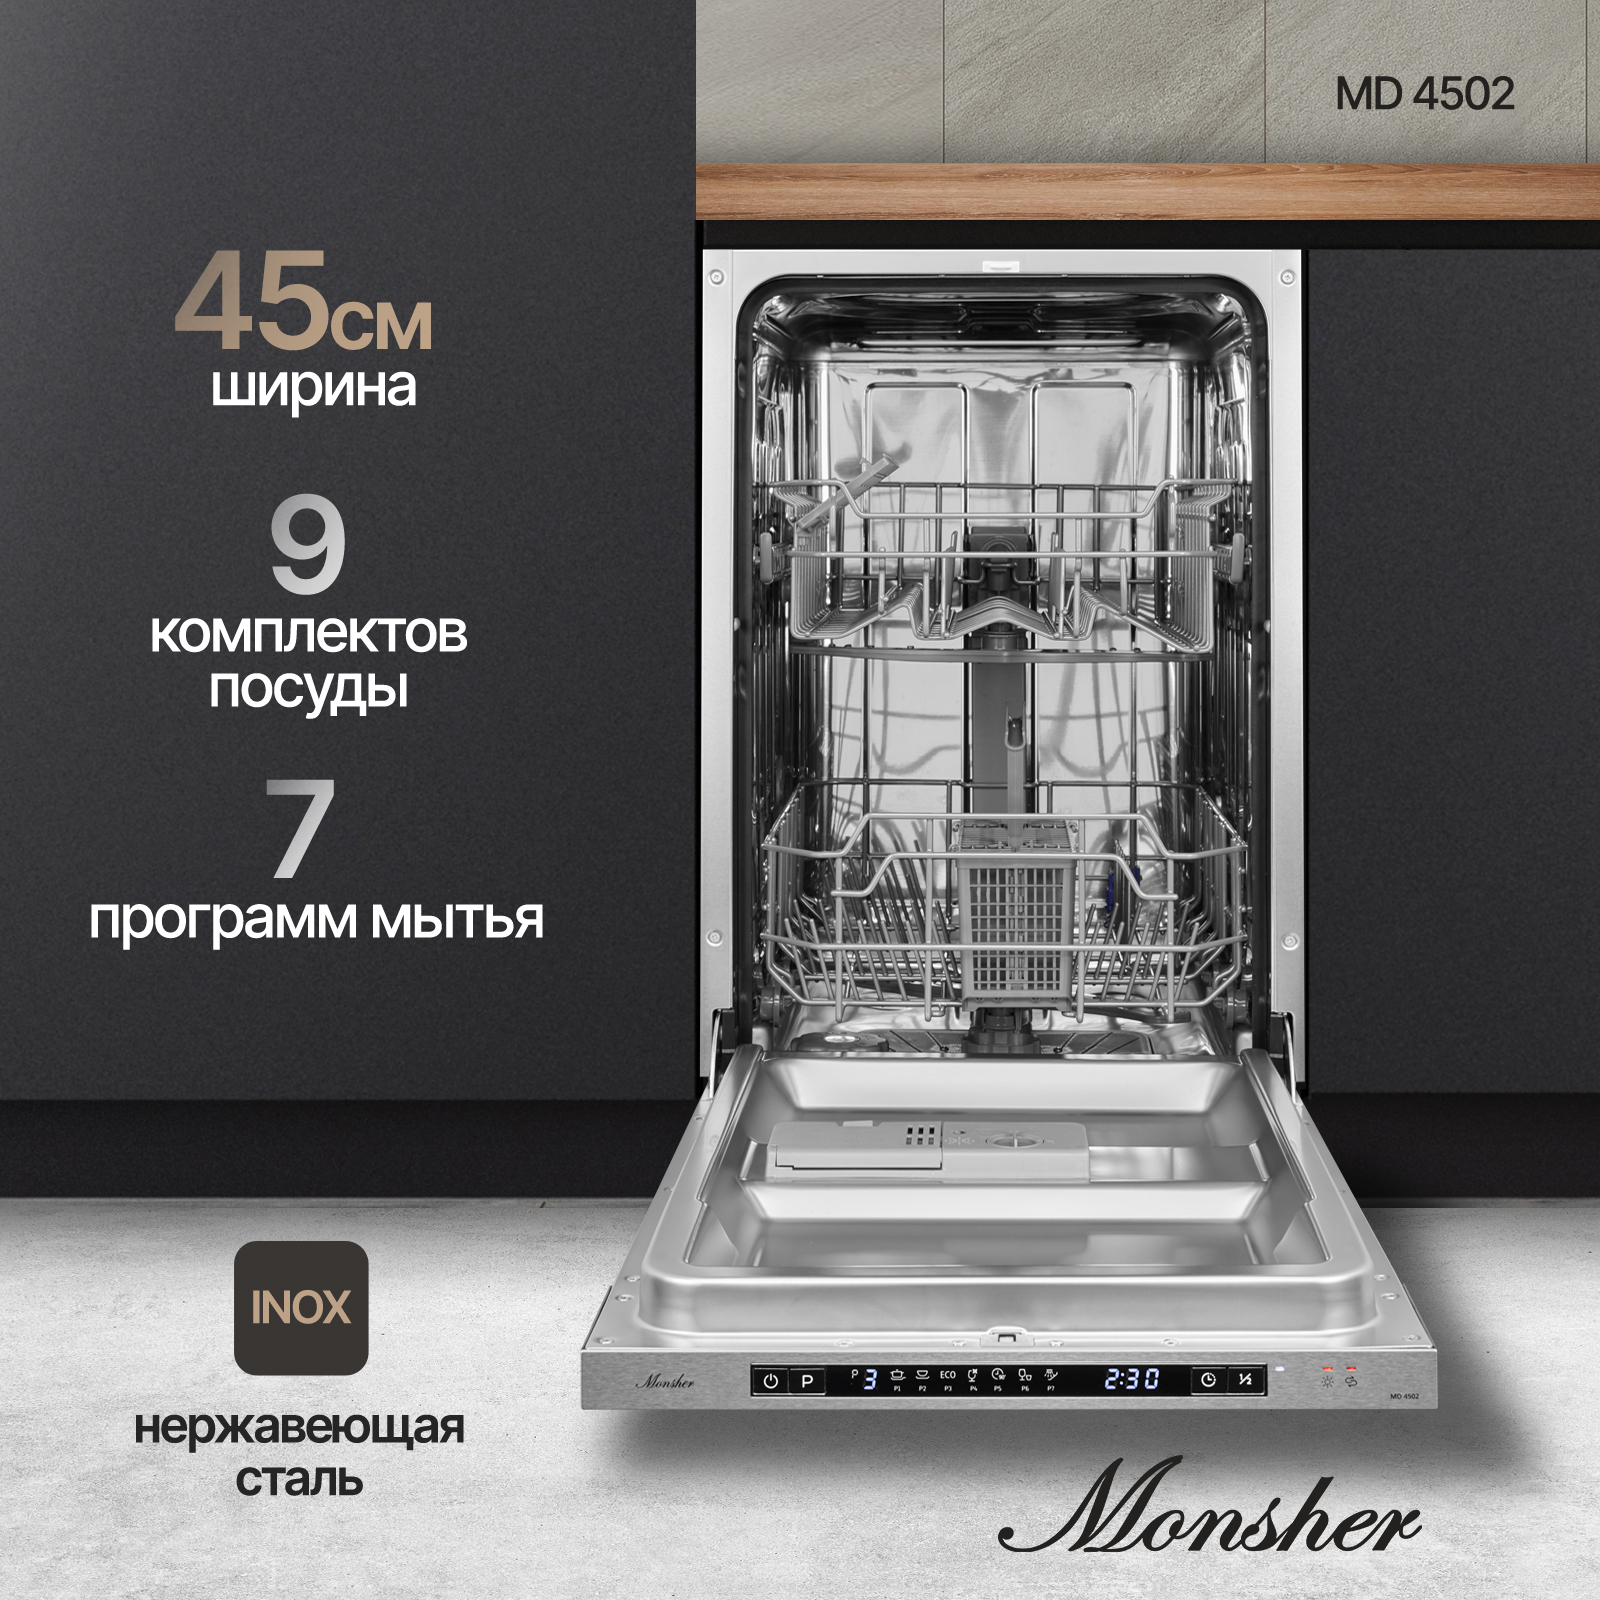 Встраиваемая посудомоечная машина Monsher MD 4502 встраиваемая посудомоечная машина monsher md 4503